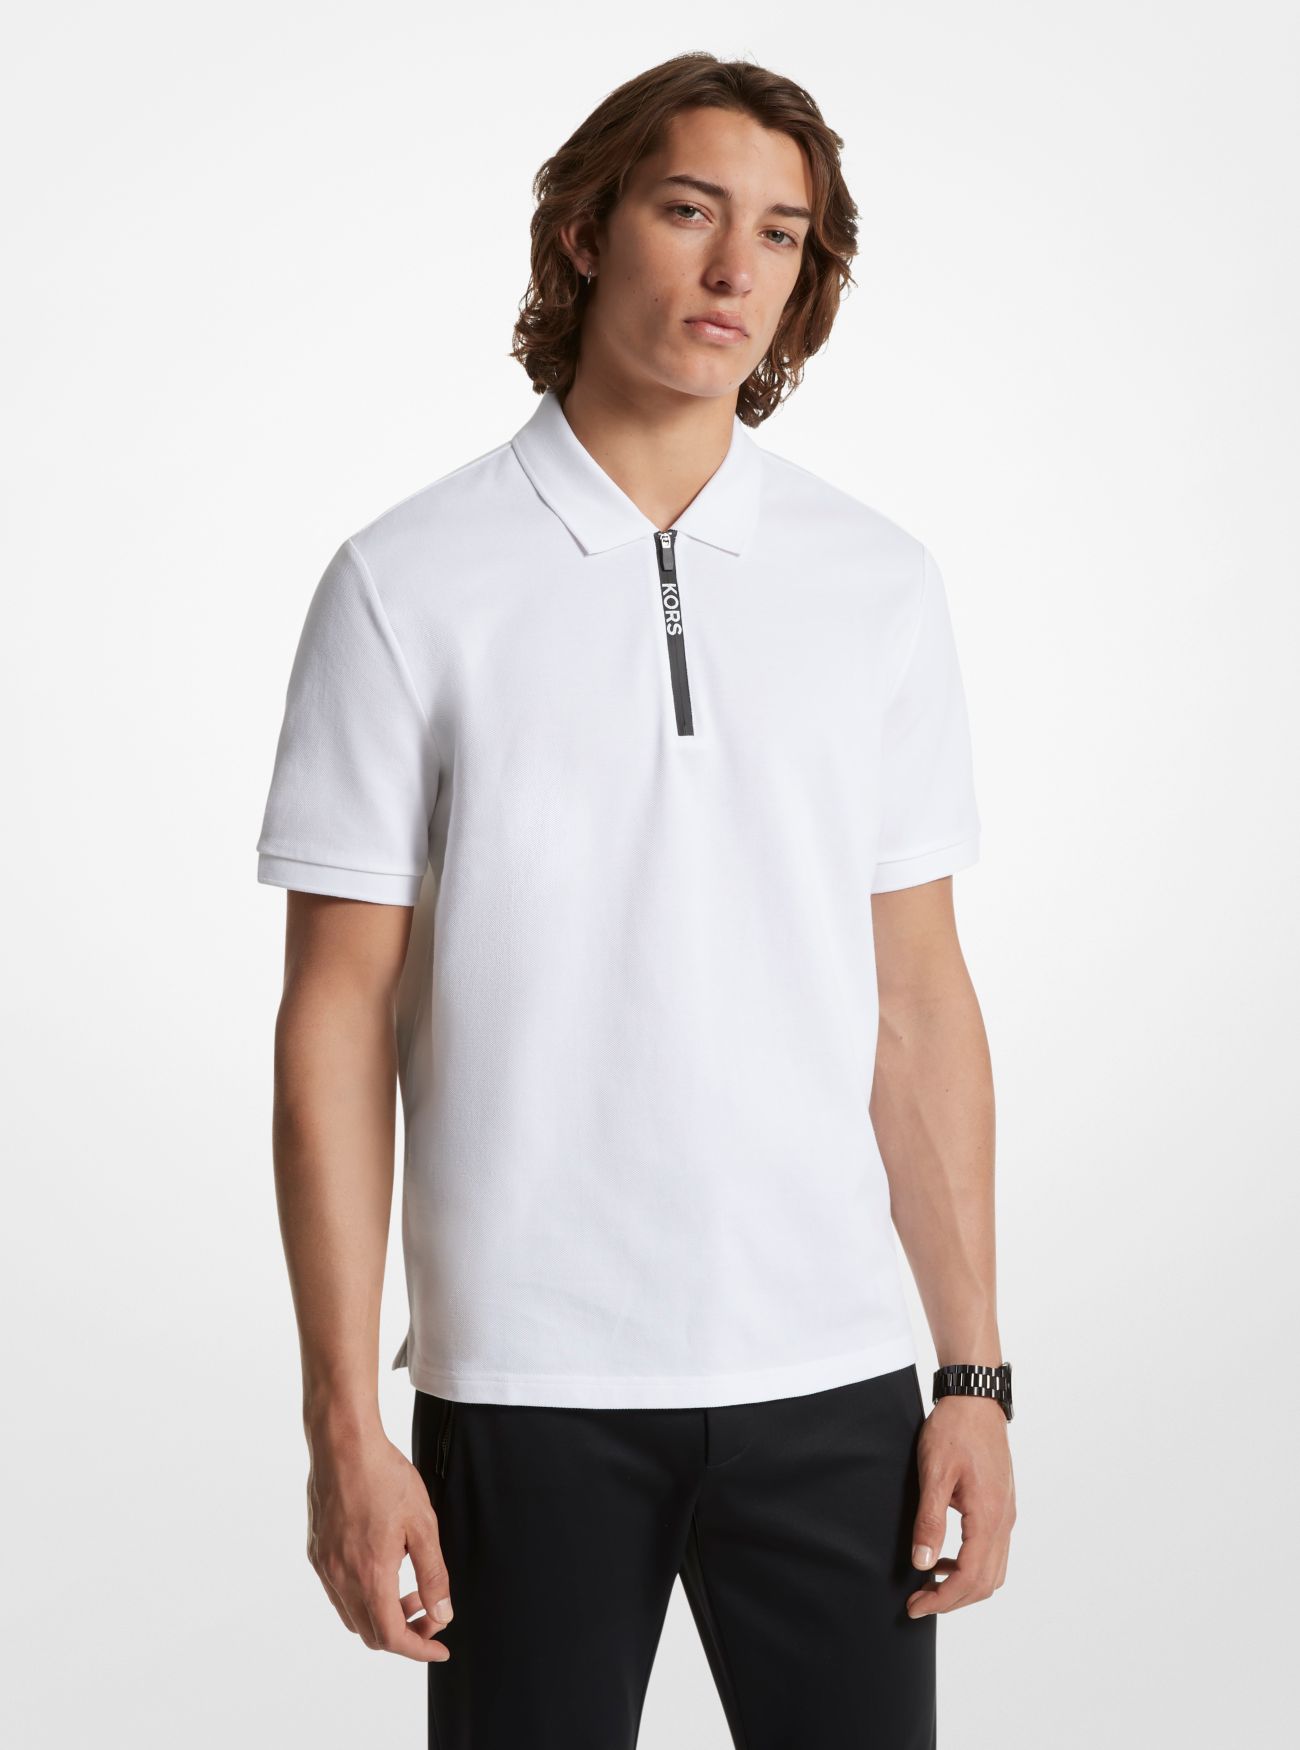 MK Cotton Half-Zip Polo Shirt - White - Michael Kors